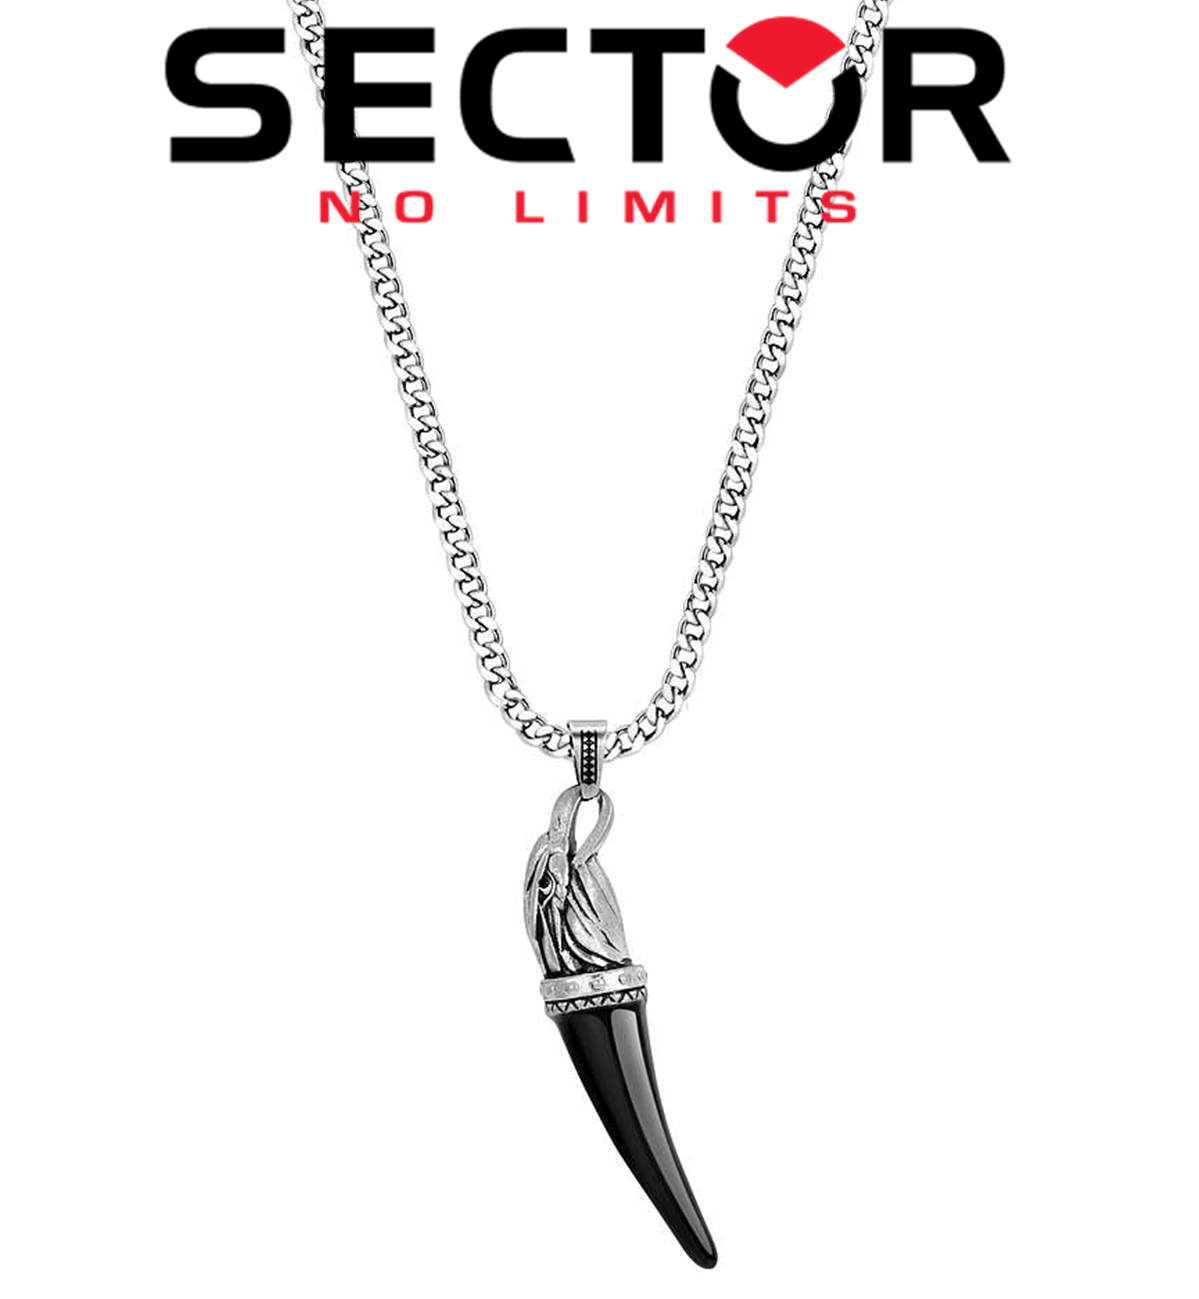 SECTOR - pánsky značkový náhrdelník orol - prívesok s retiazkou